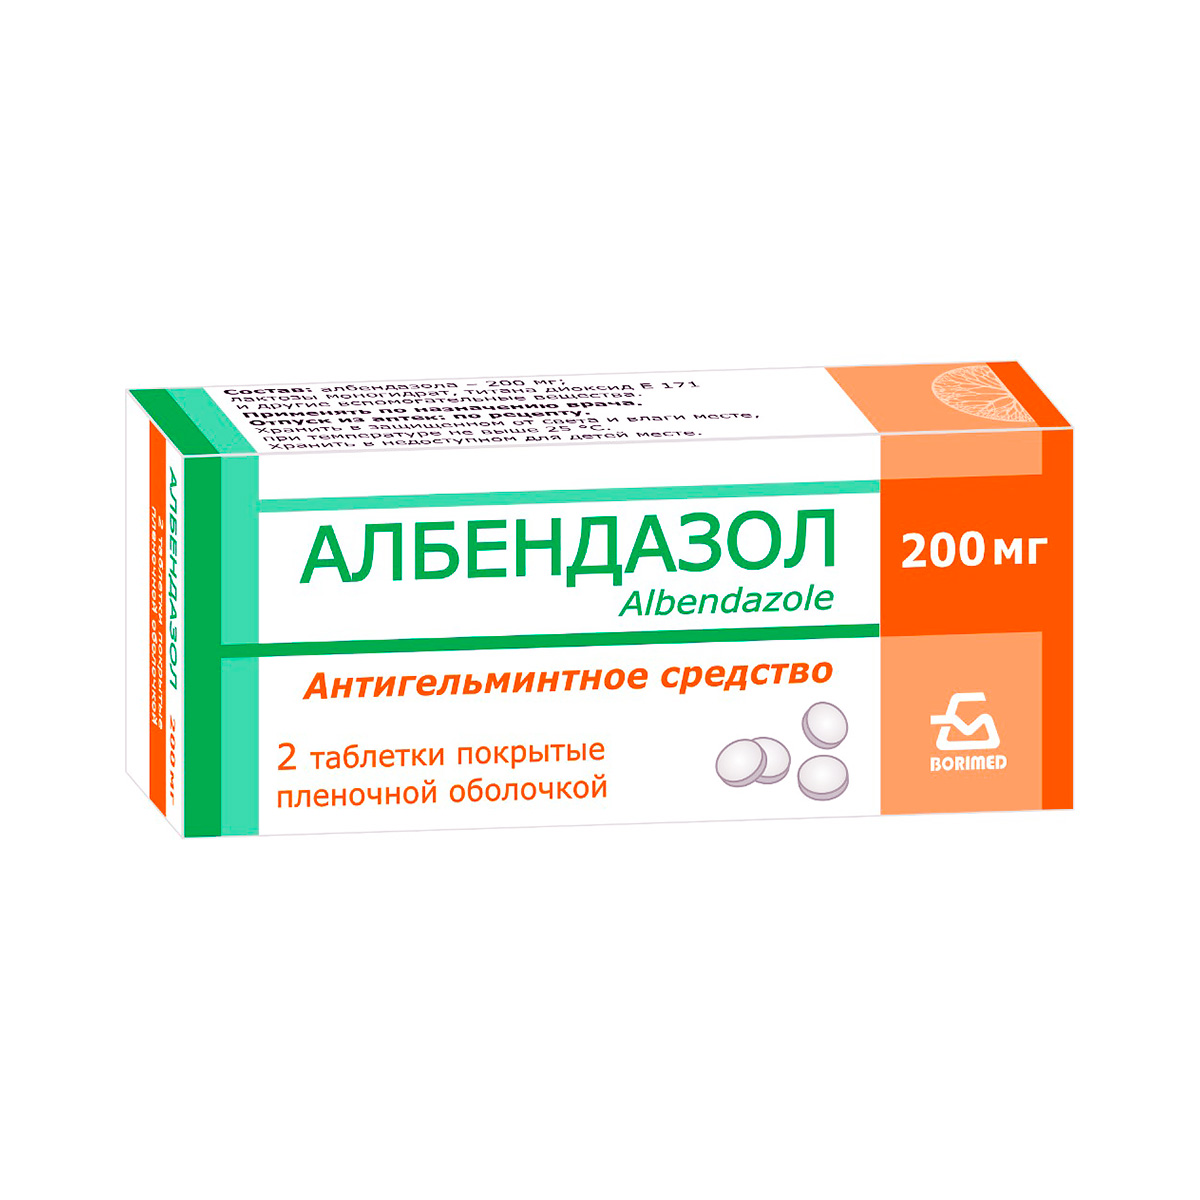 Албендазол 200 мг таблетки покрытые пленочной оболочкой 2 шт